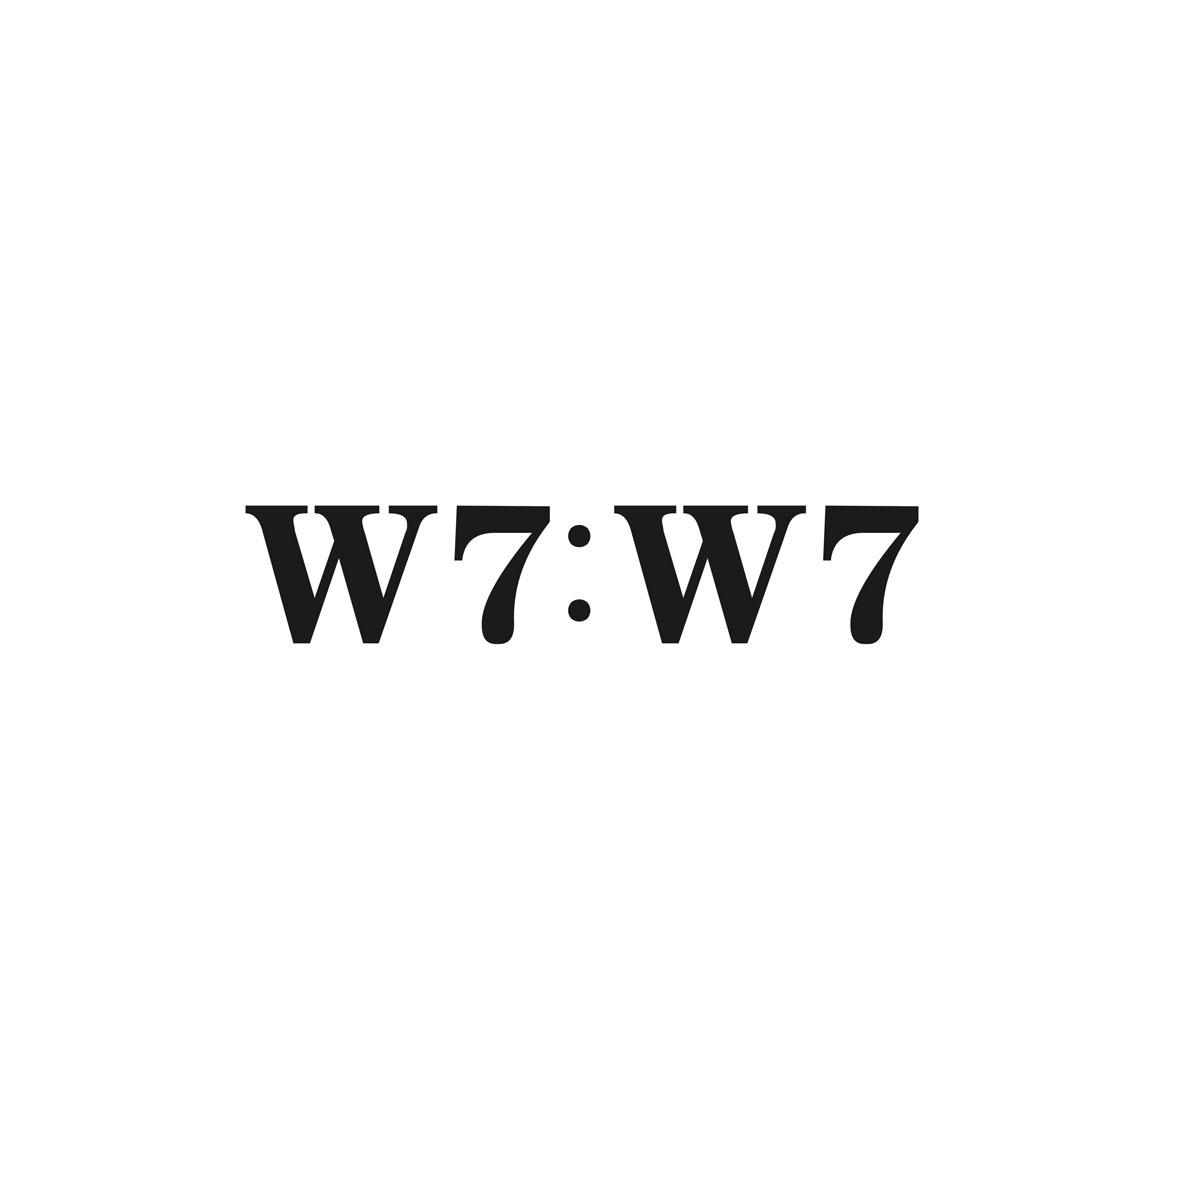 W7:W7